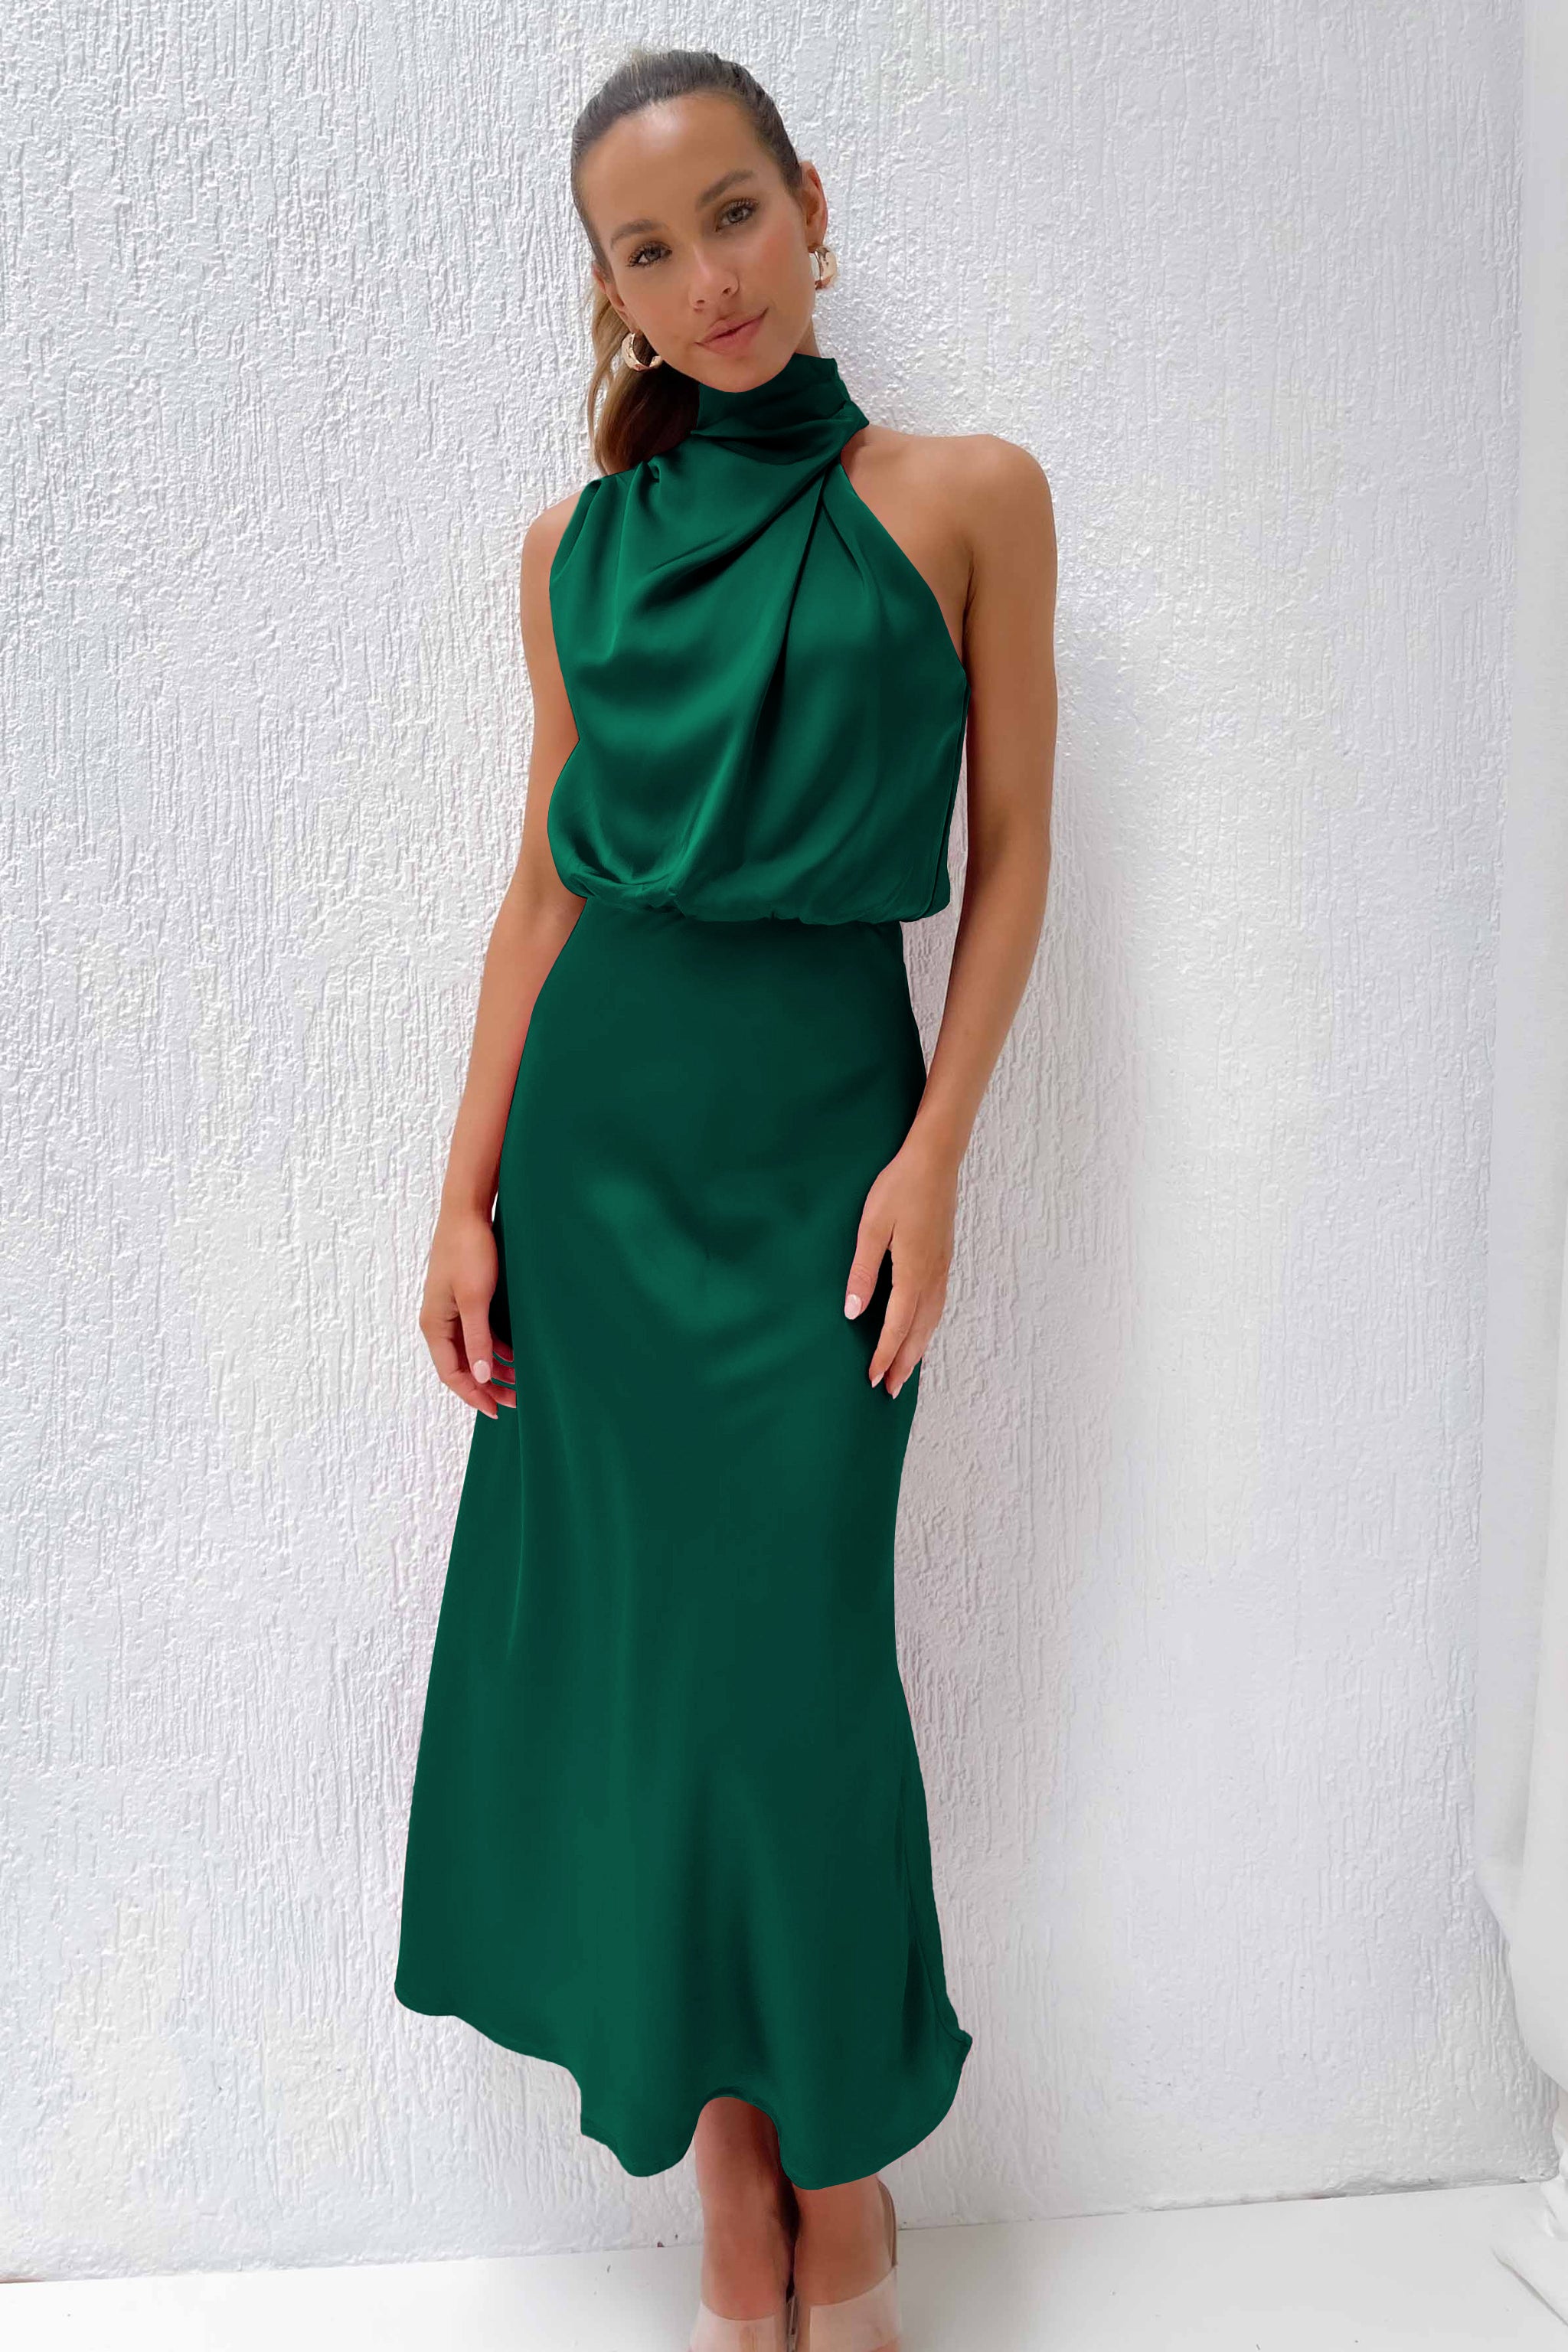 Green Halter top Sleeveless Cocktail Dress